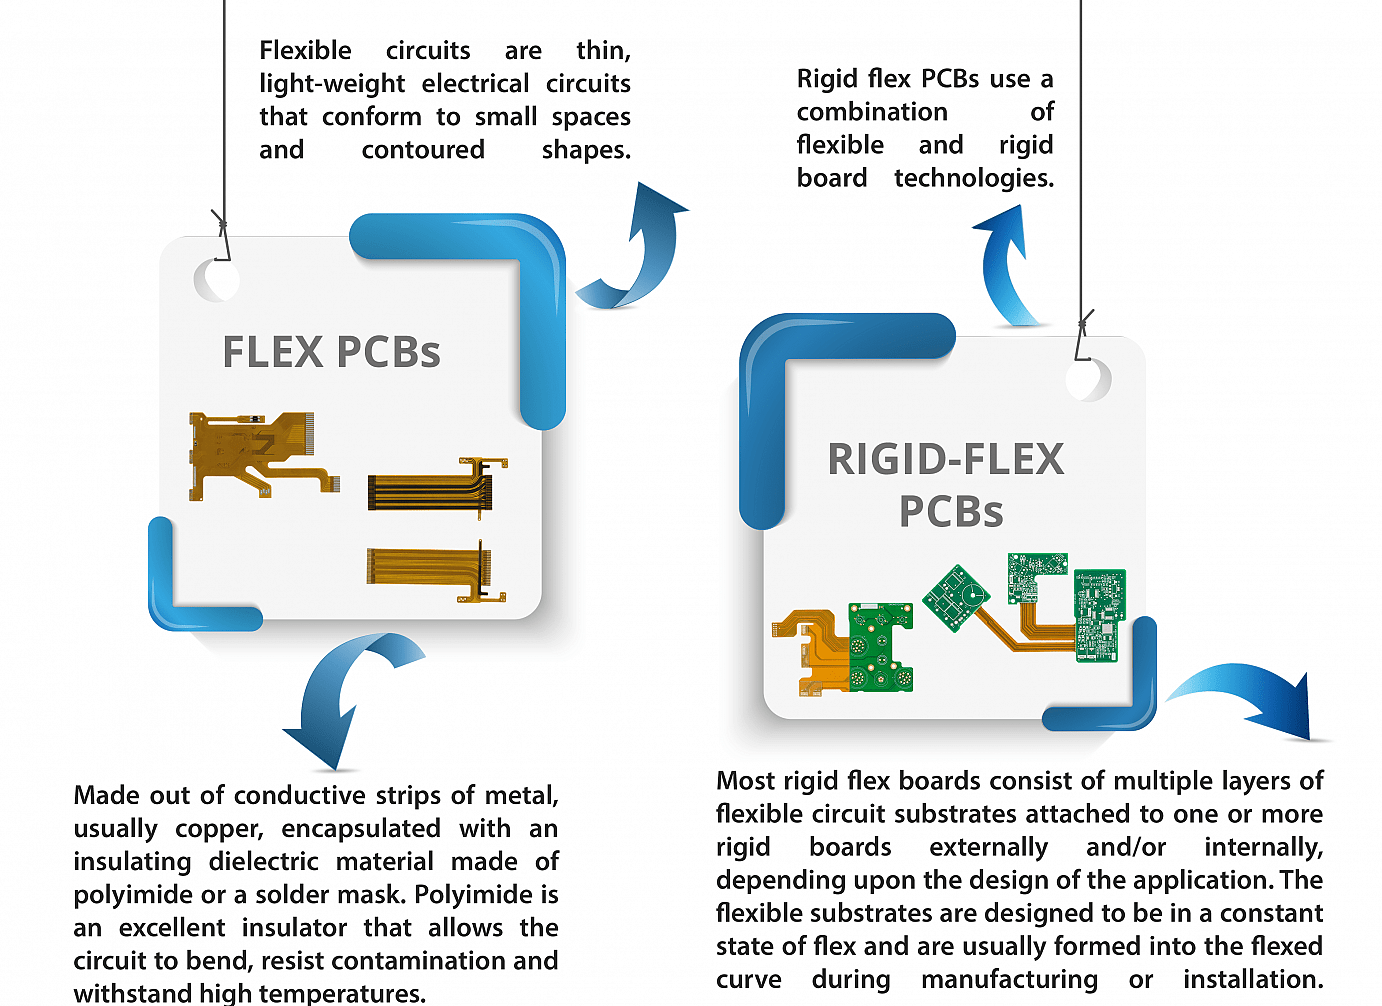 Rigid-flex PCB vs. Flexible PCB